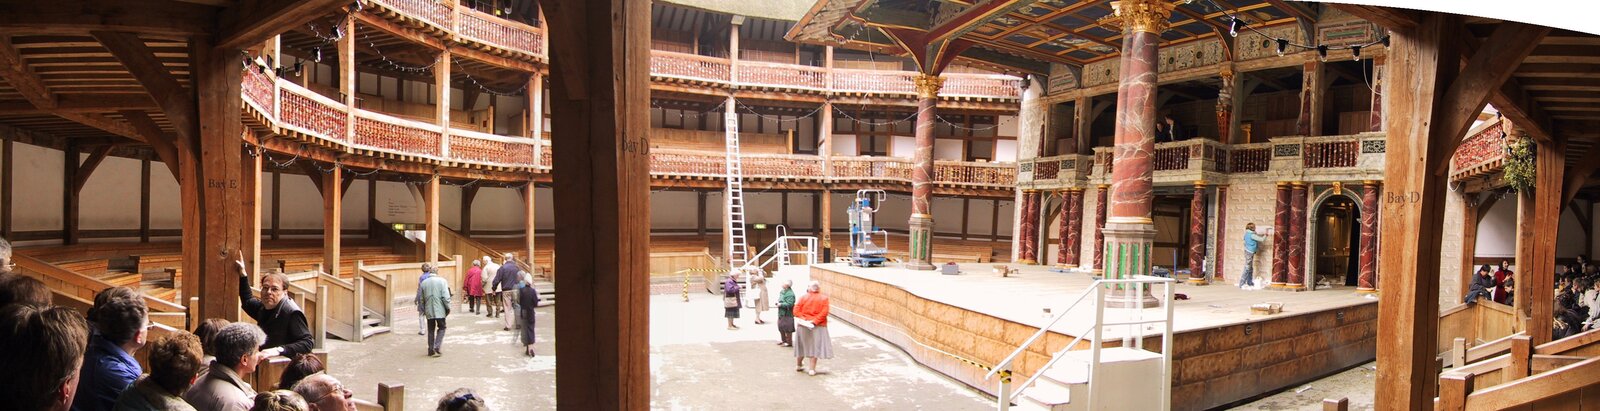 Na zdjęciu widzimy wnętrze teatru. Z prawej strony podwyższona scena z dachem wspartym dwiema kamiennymi kolumnami. Wokół sceny widzimy dwa piętra z miejscami dla widowni. Jest to drewniana konstrukcja wsparta licznymi kolumnami. Gdzieniegdzie widać oglądających pomieszczenie ludzi.